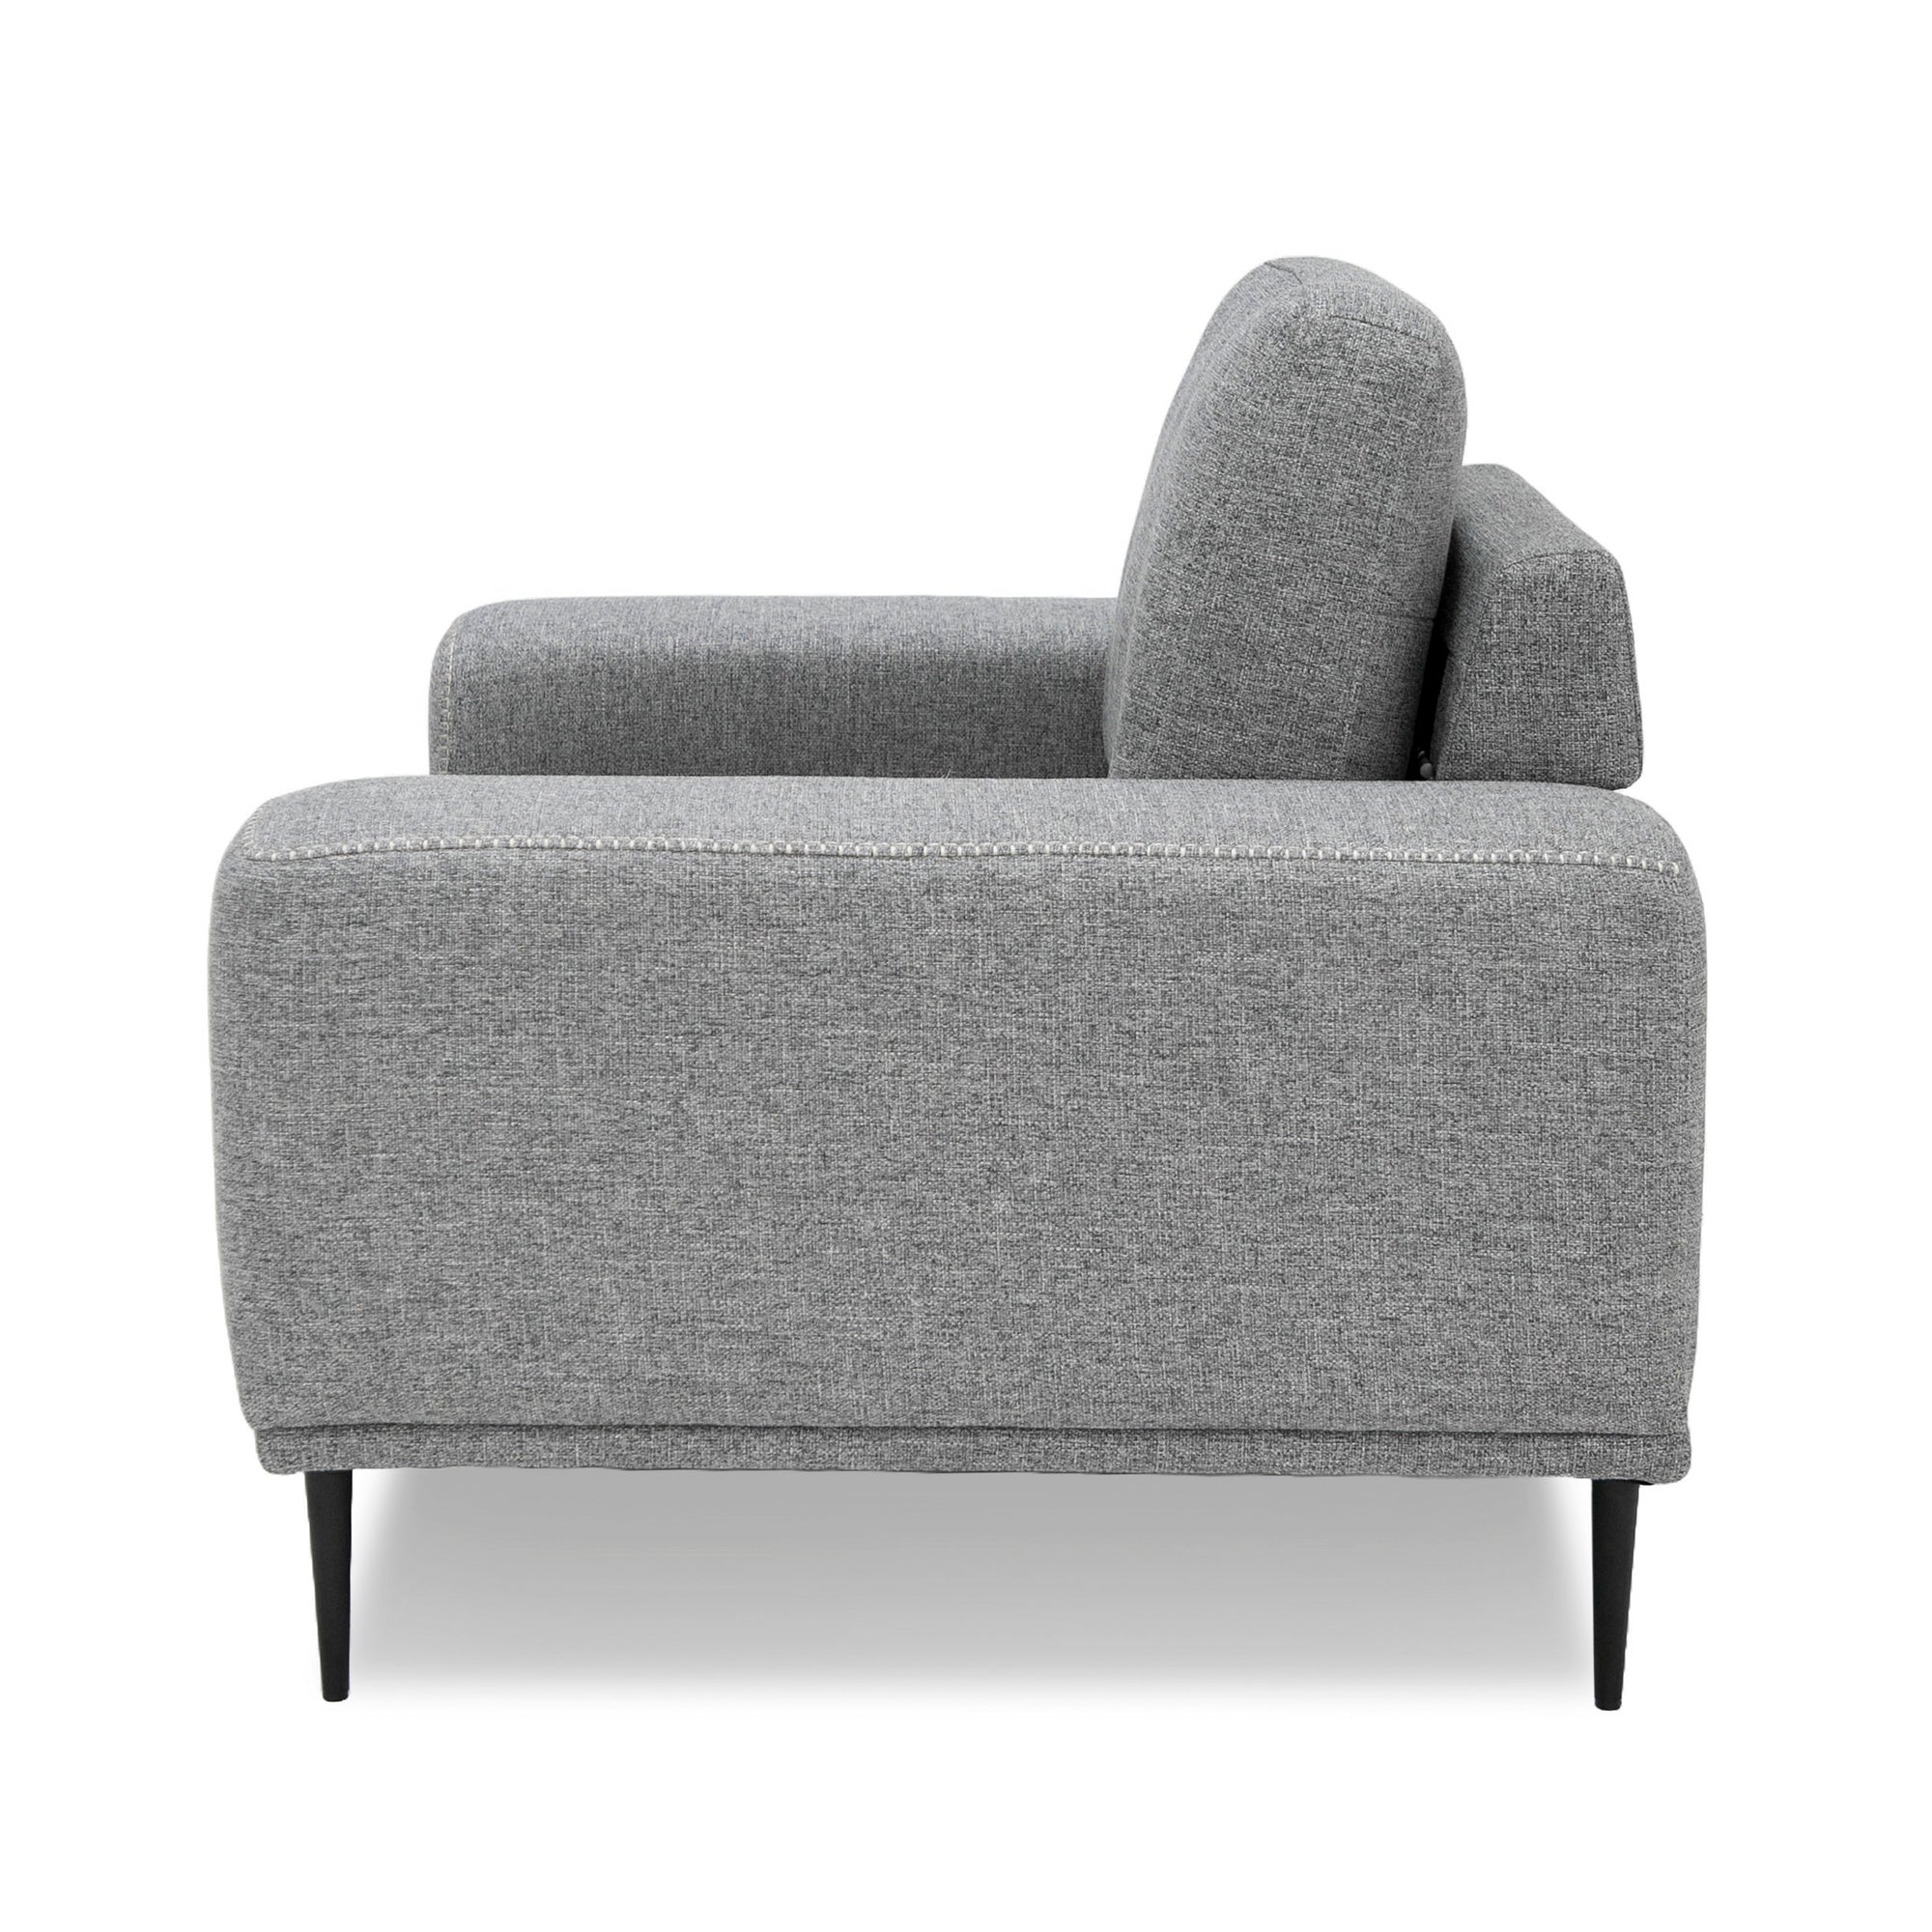 Divani Casa Fonda - Modern Grey Fabric Chair